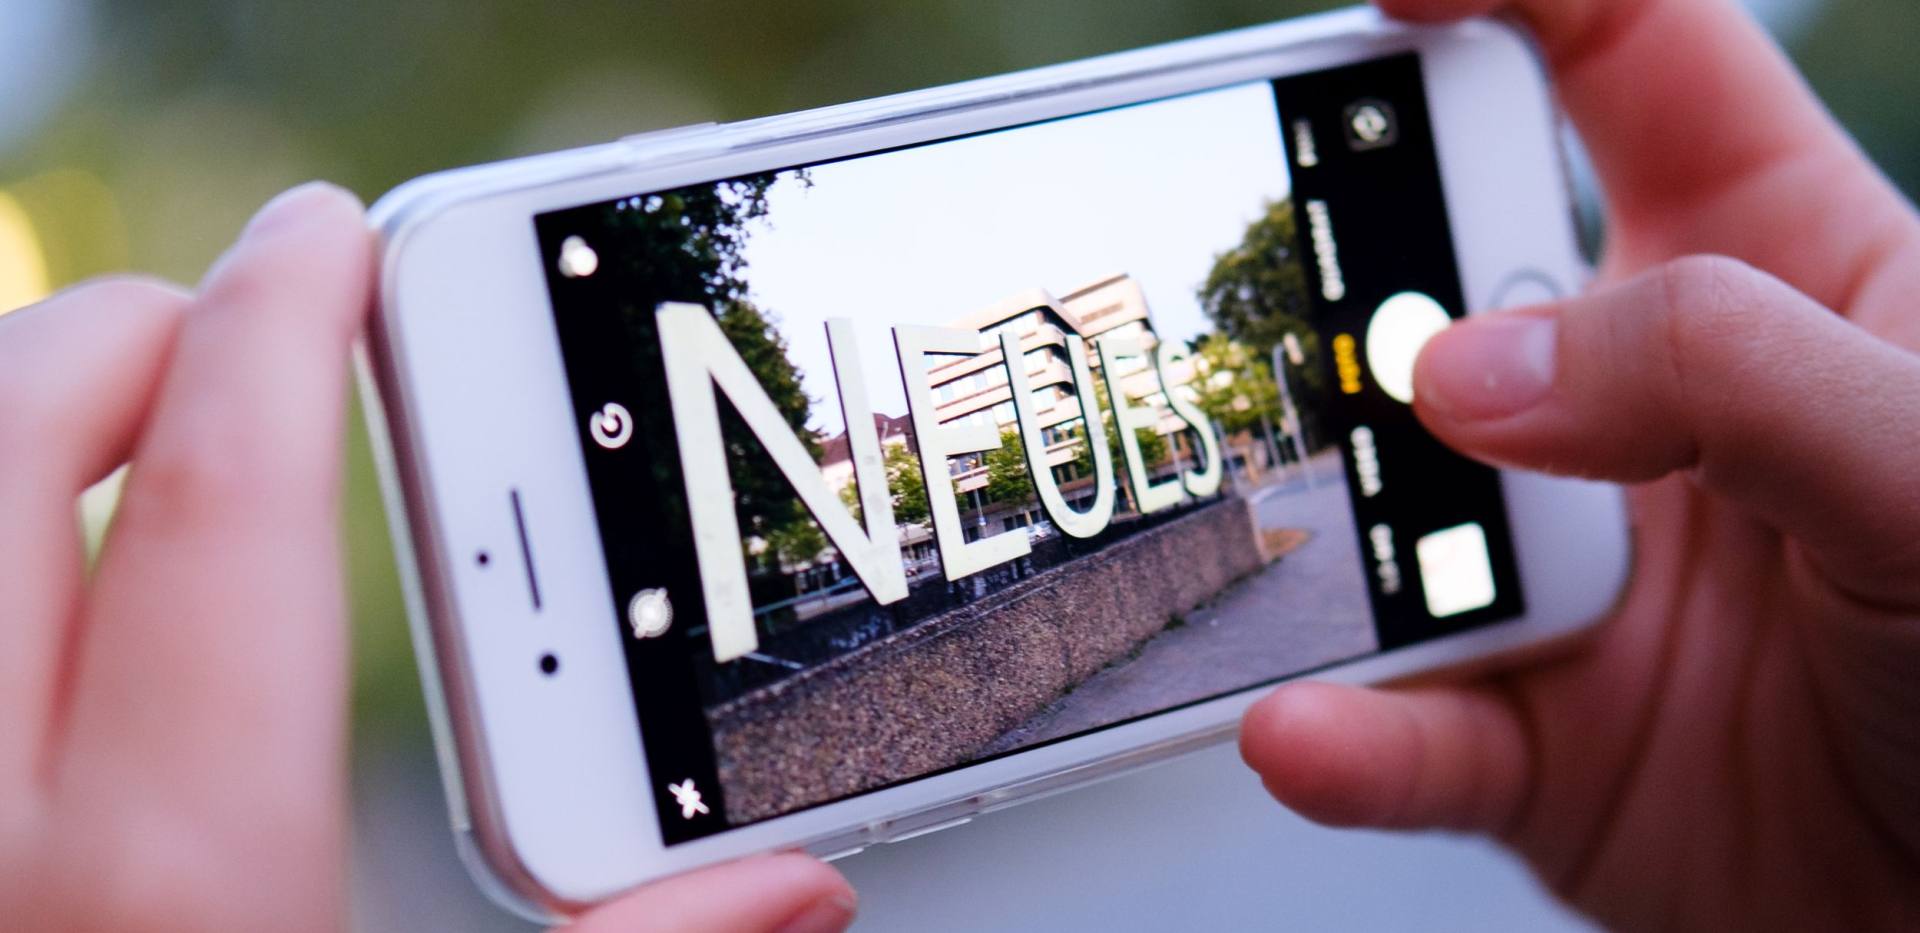 Schriftzug "Neues" vor dem Horst-Janssen-Museum aufgenommen als Blick durch ein Smartphone.